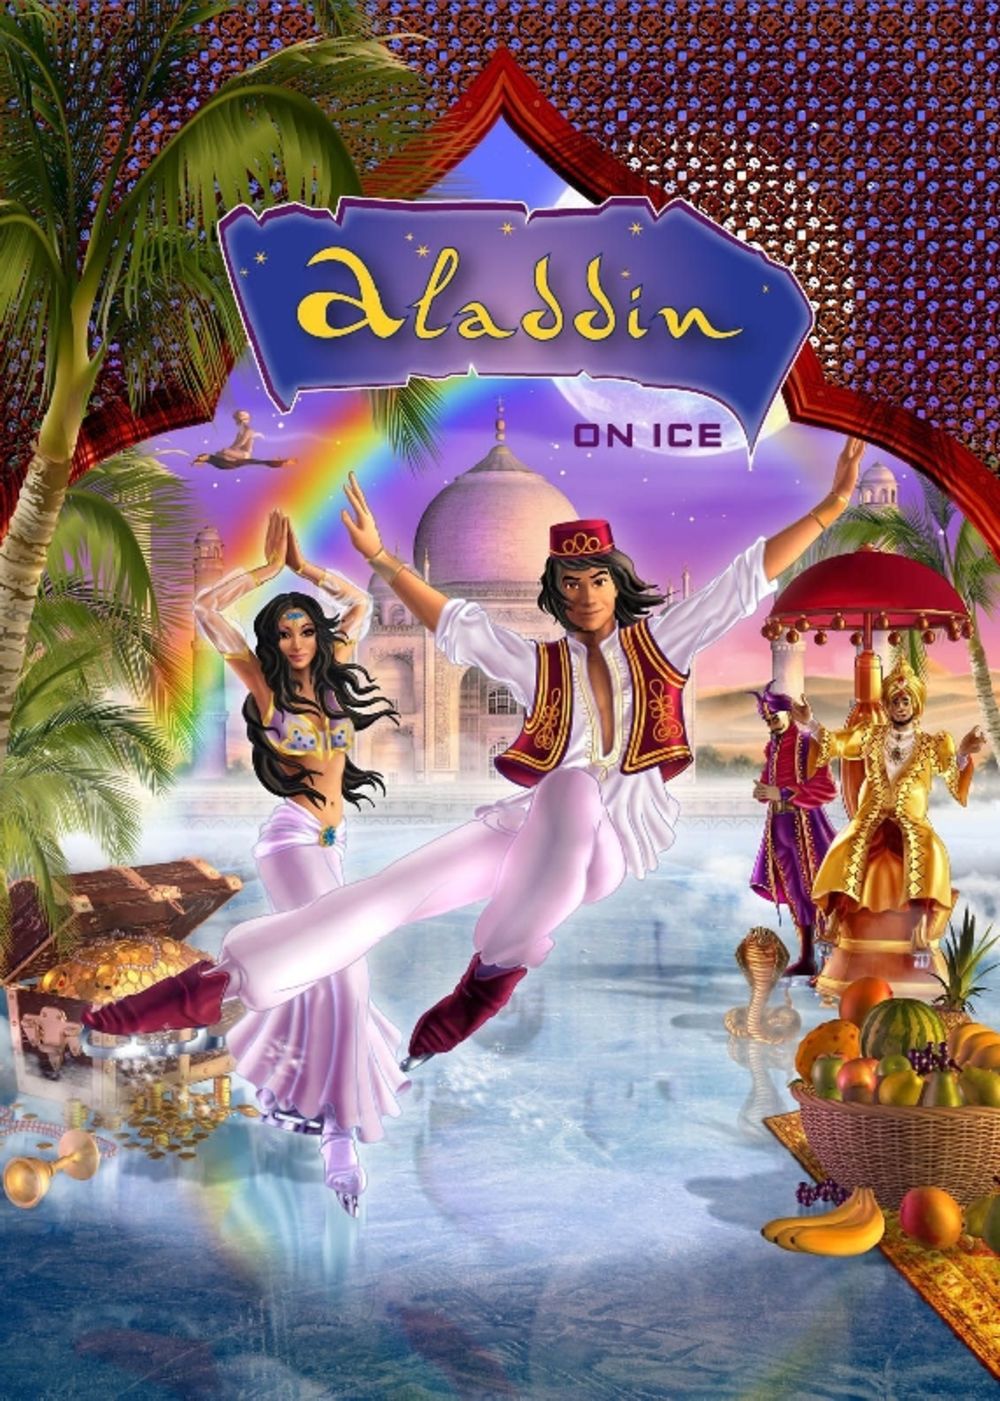 Još jedna magična priča za najmlađe Aladin na ledu dolazi u Beogradsku arenu od 18. do 20. februara 2011. godine, a karte za ovaj spektakl su u prodaji od 25. decembra